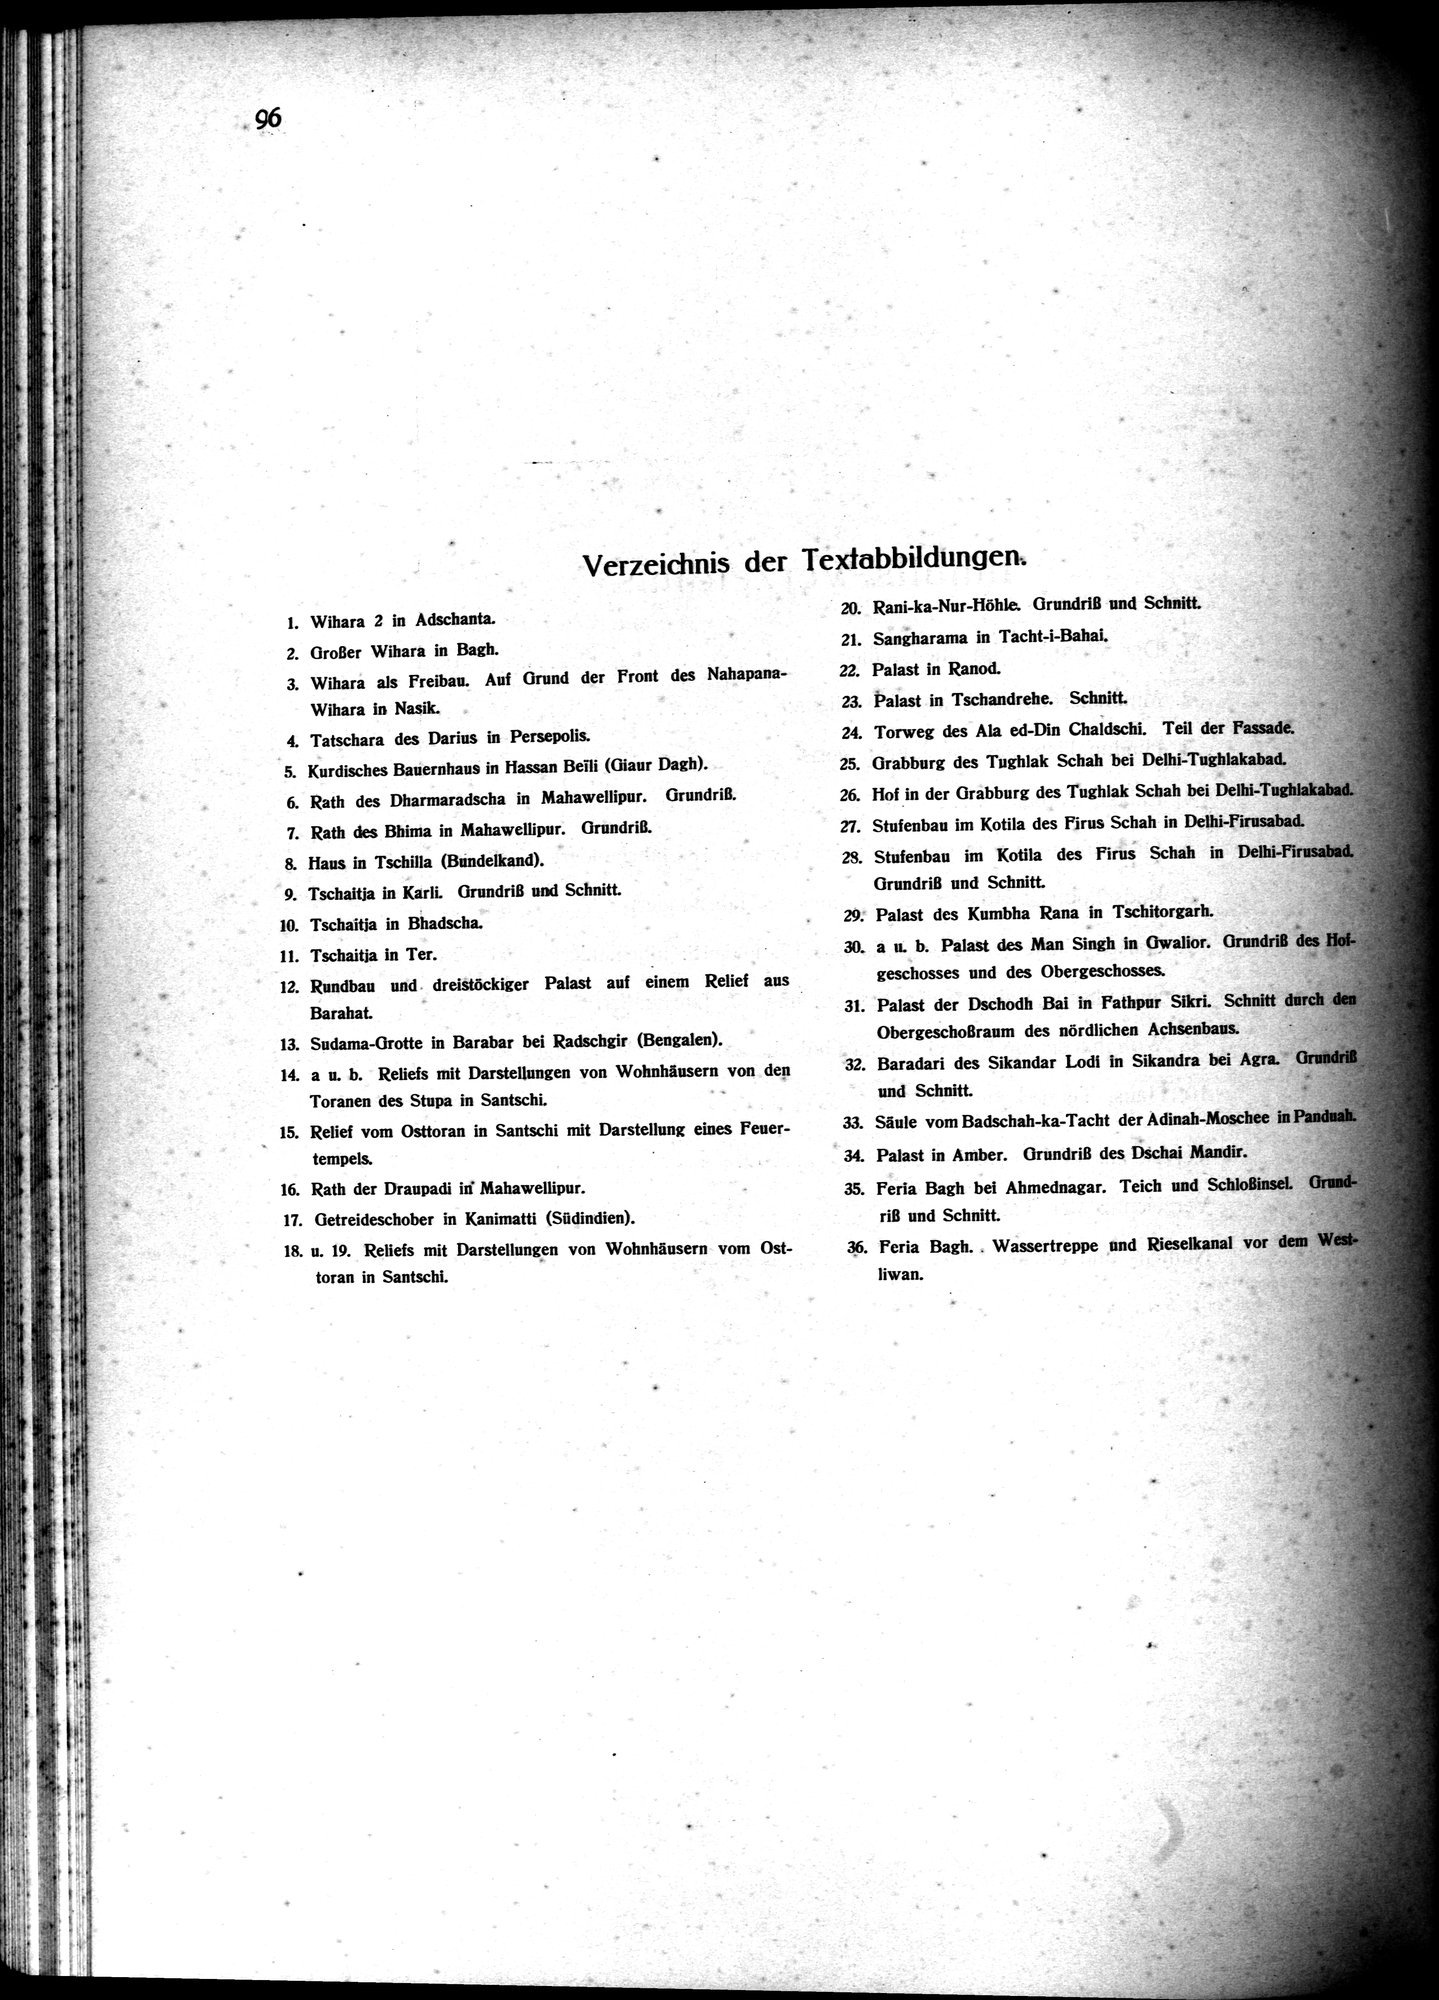 Indische Palaste und Wohnhauser : vol.1 / Page 106 (Grayscale High Resolution Image)